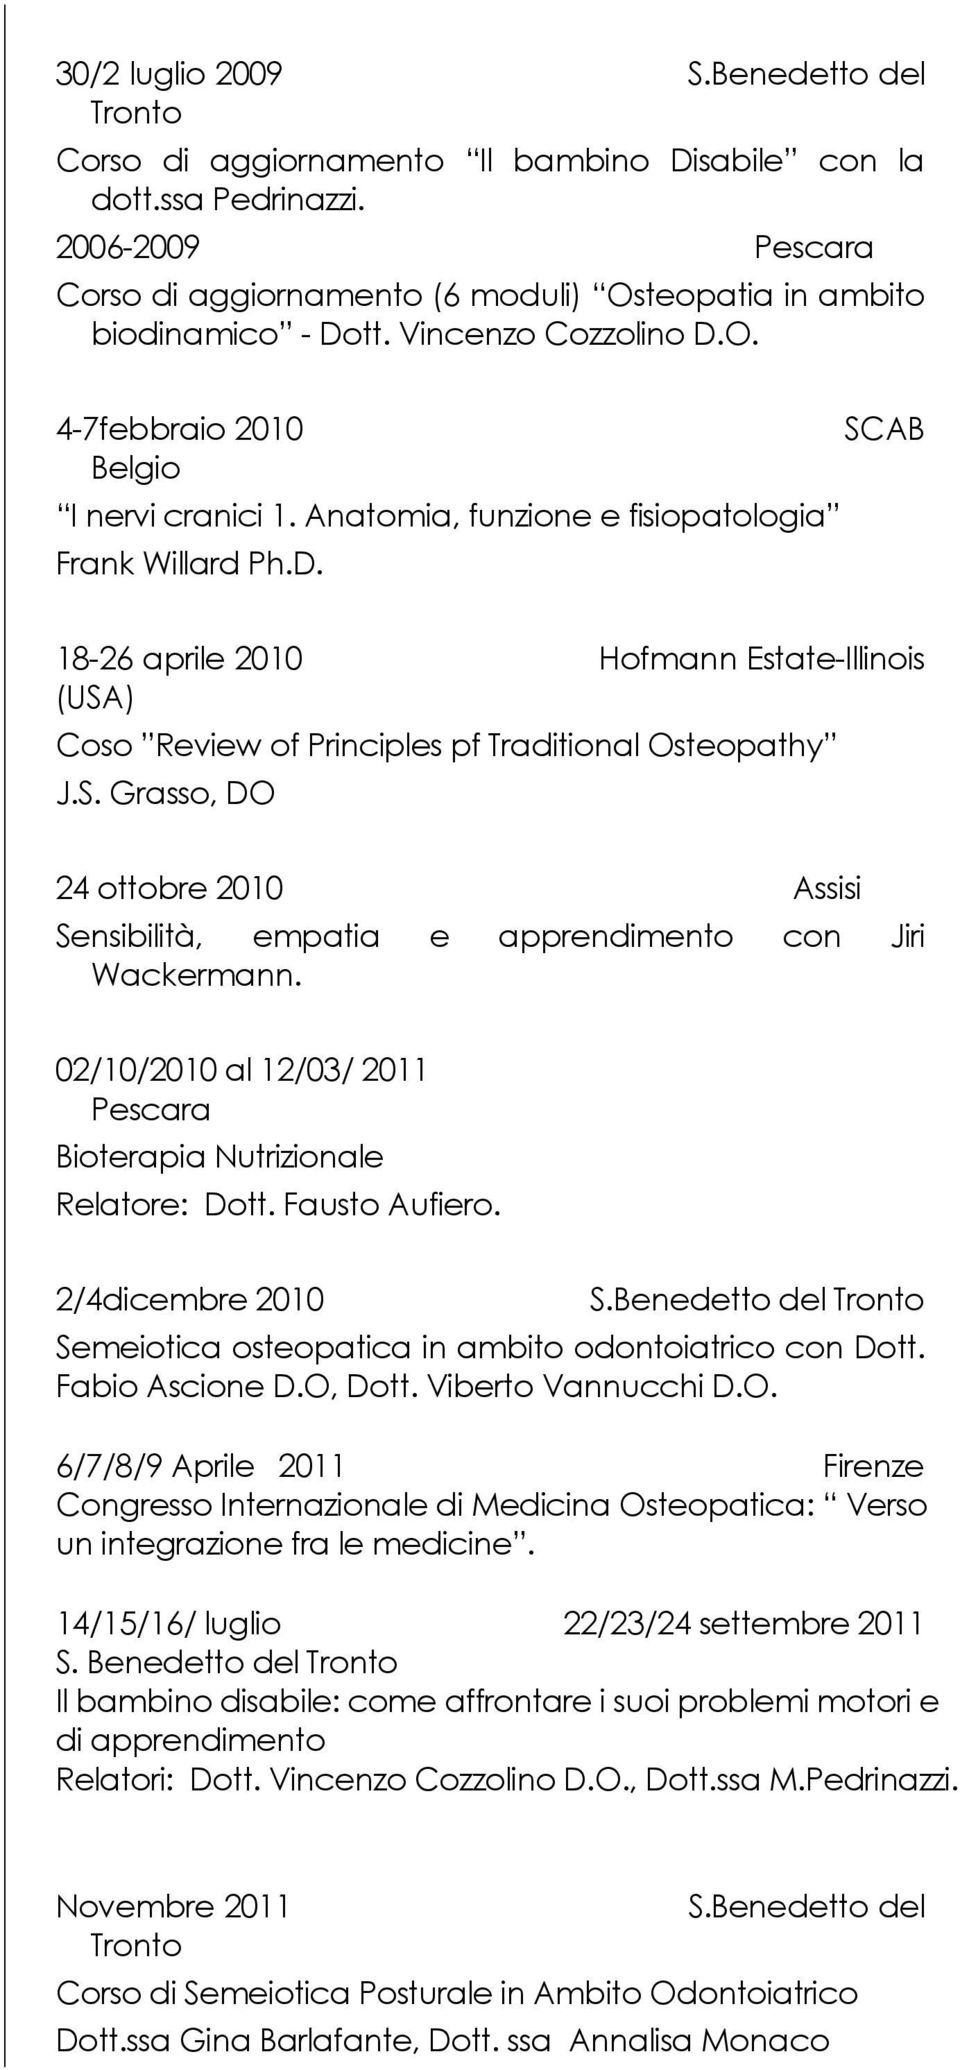 S. Grasso, DO 24 ottobre 2010 Assisi Sensibilità, empatia e apprendimento con Jiri Wackermann. 02/10/2010 al 12/03/ 2011 Bioterapia Nutrizionale Relatore: Dott. Fausto Aufiero. 2/4dicembre 2010 S.